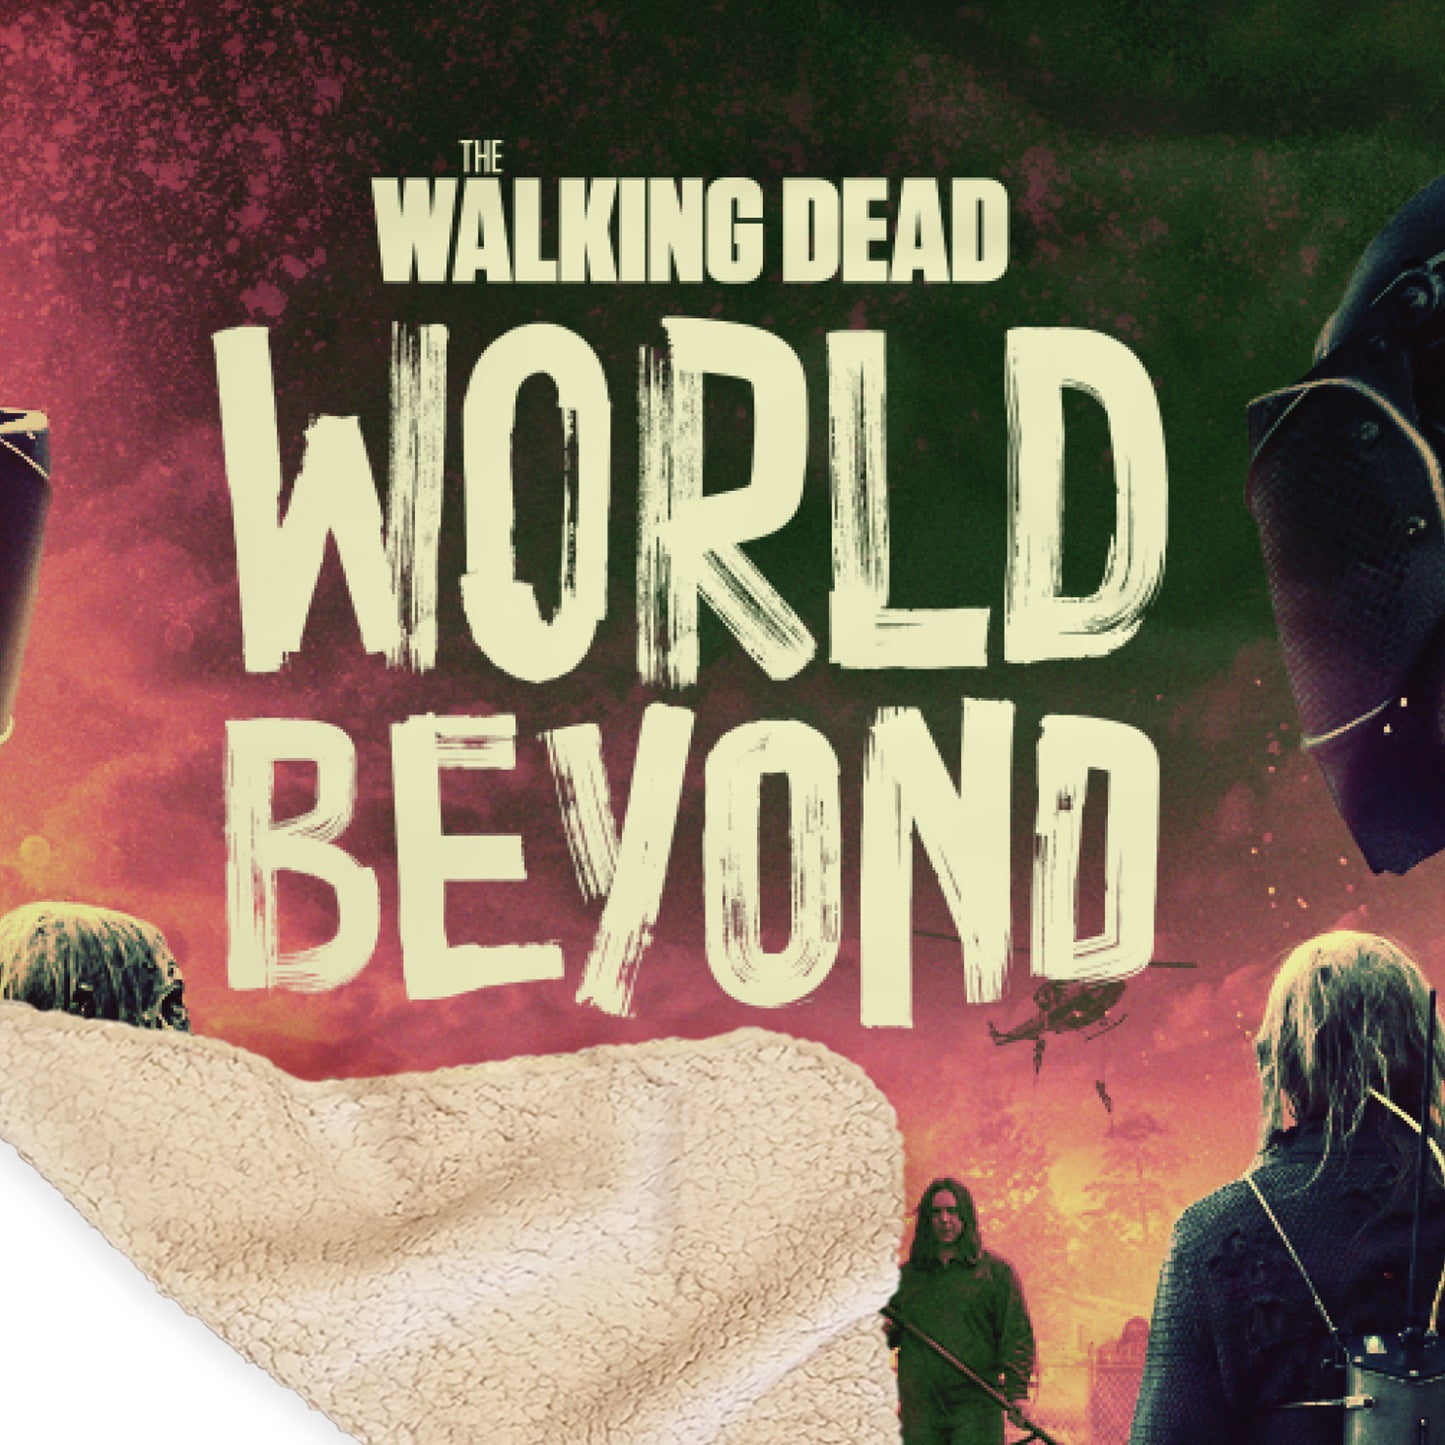 The Walking Dead: World Beyond Season 2 Key Art Sherpa Blanket